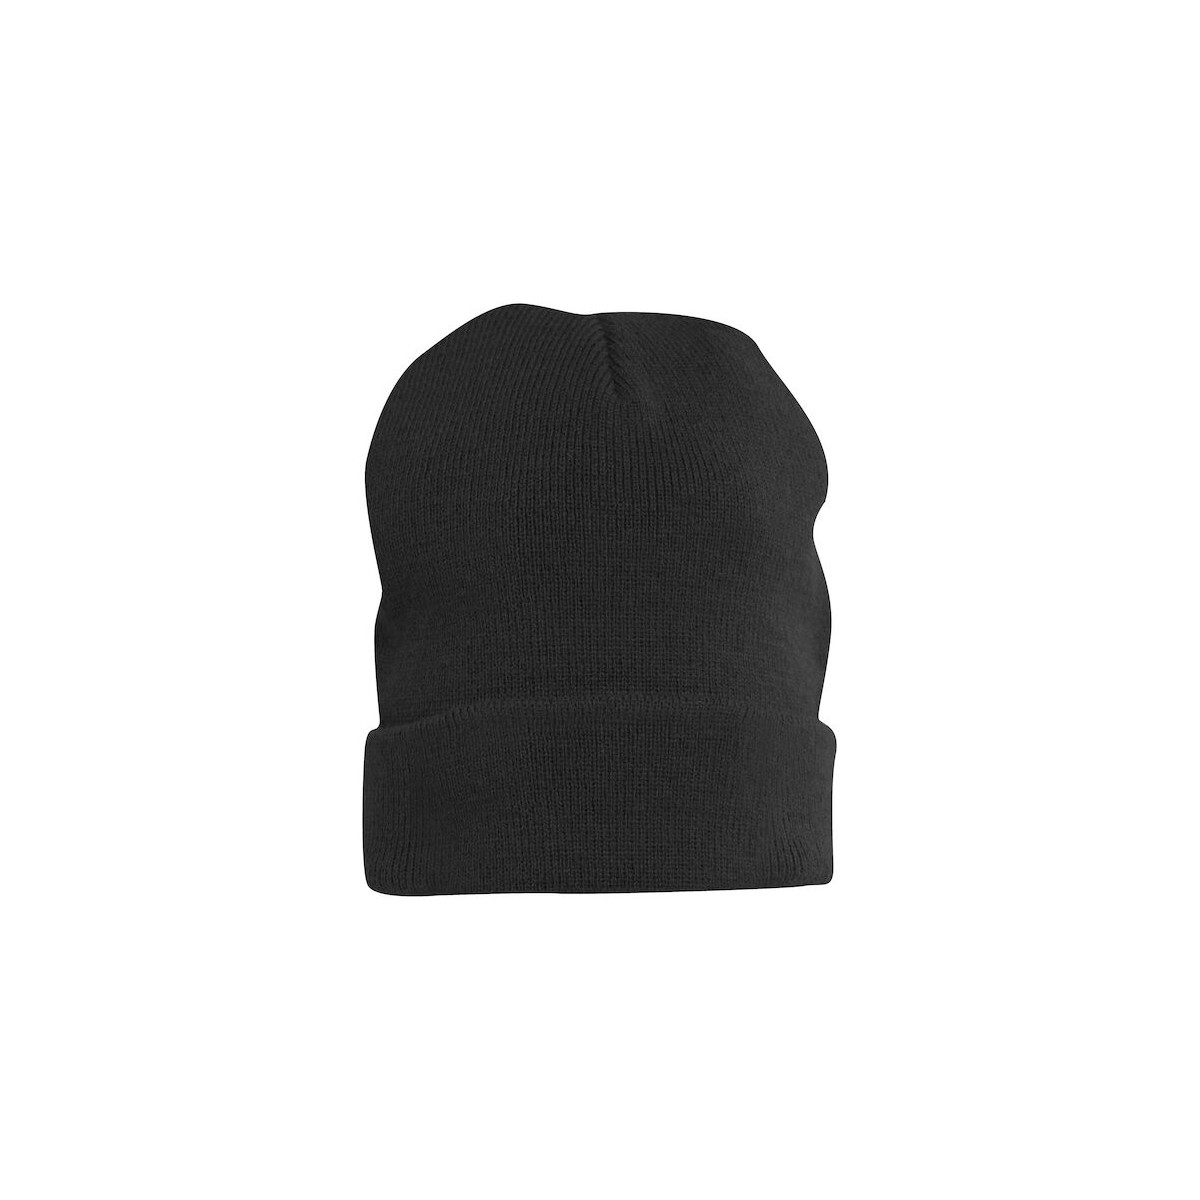 Bonnet unisexe tricoté - CLIQUE - bord retourné - Couleur noir - Personnalisable en petite quantité